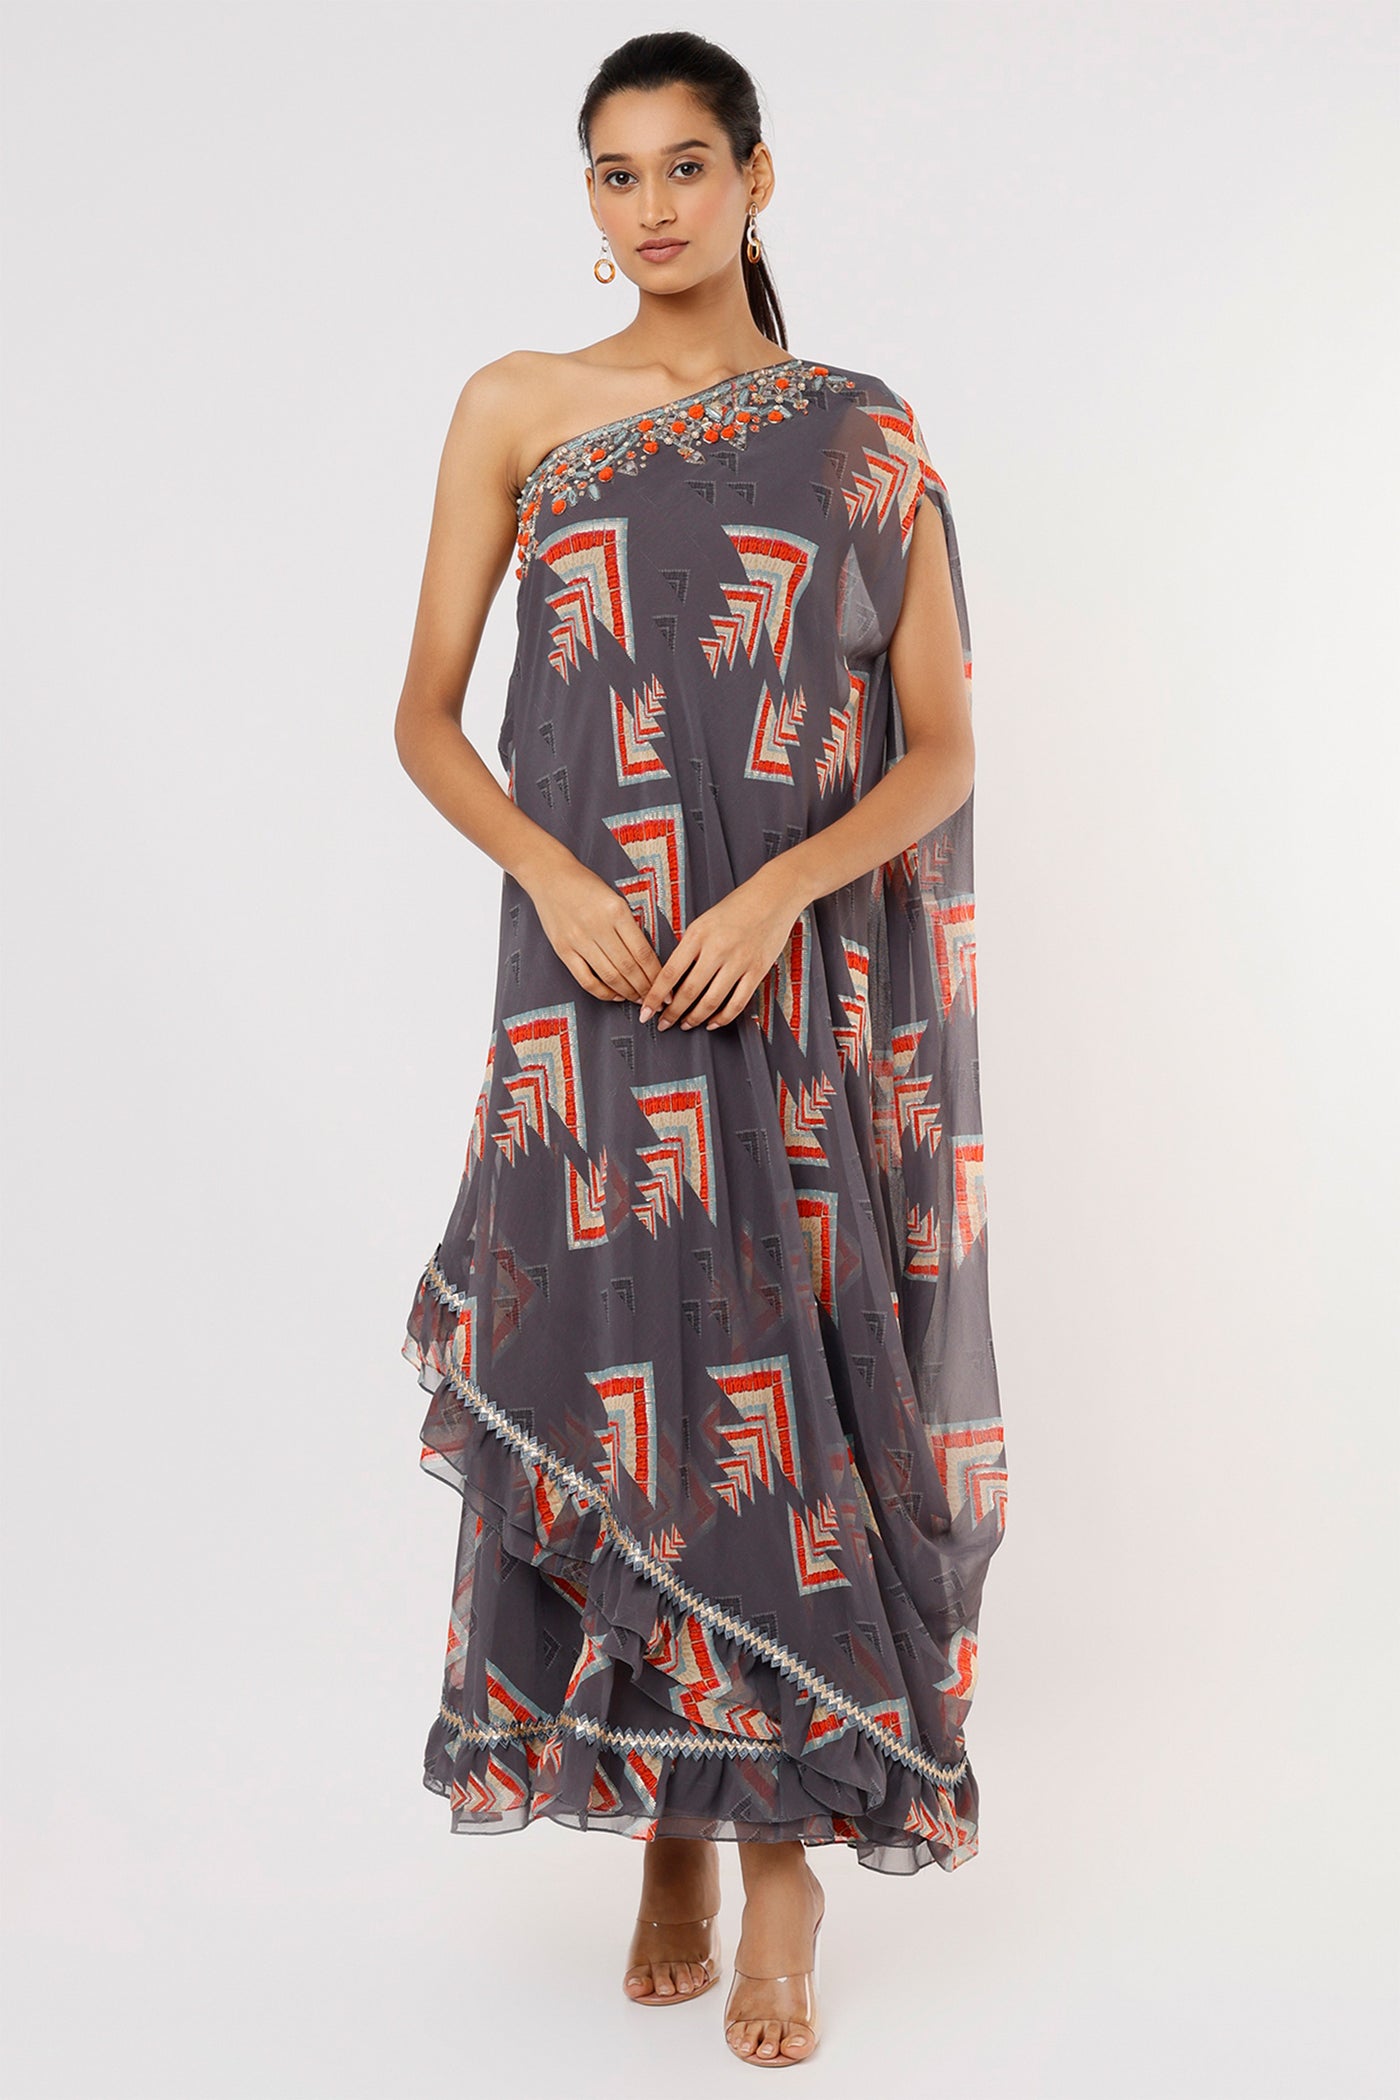 Gopi vaid Daphne One Shoulder Gown grey festive Indian designer wear online shopping melange singapore